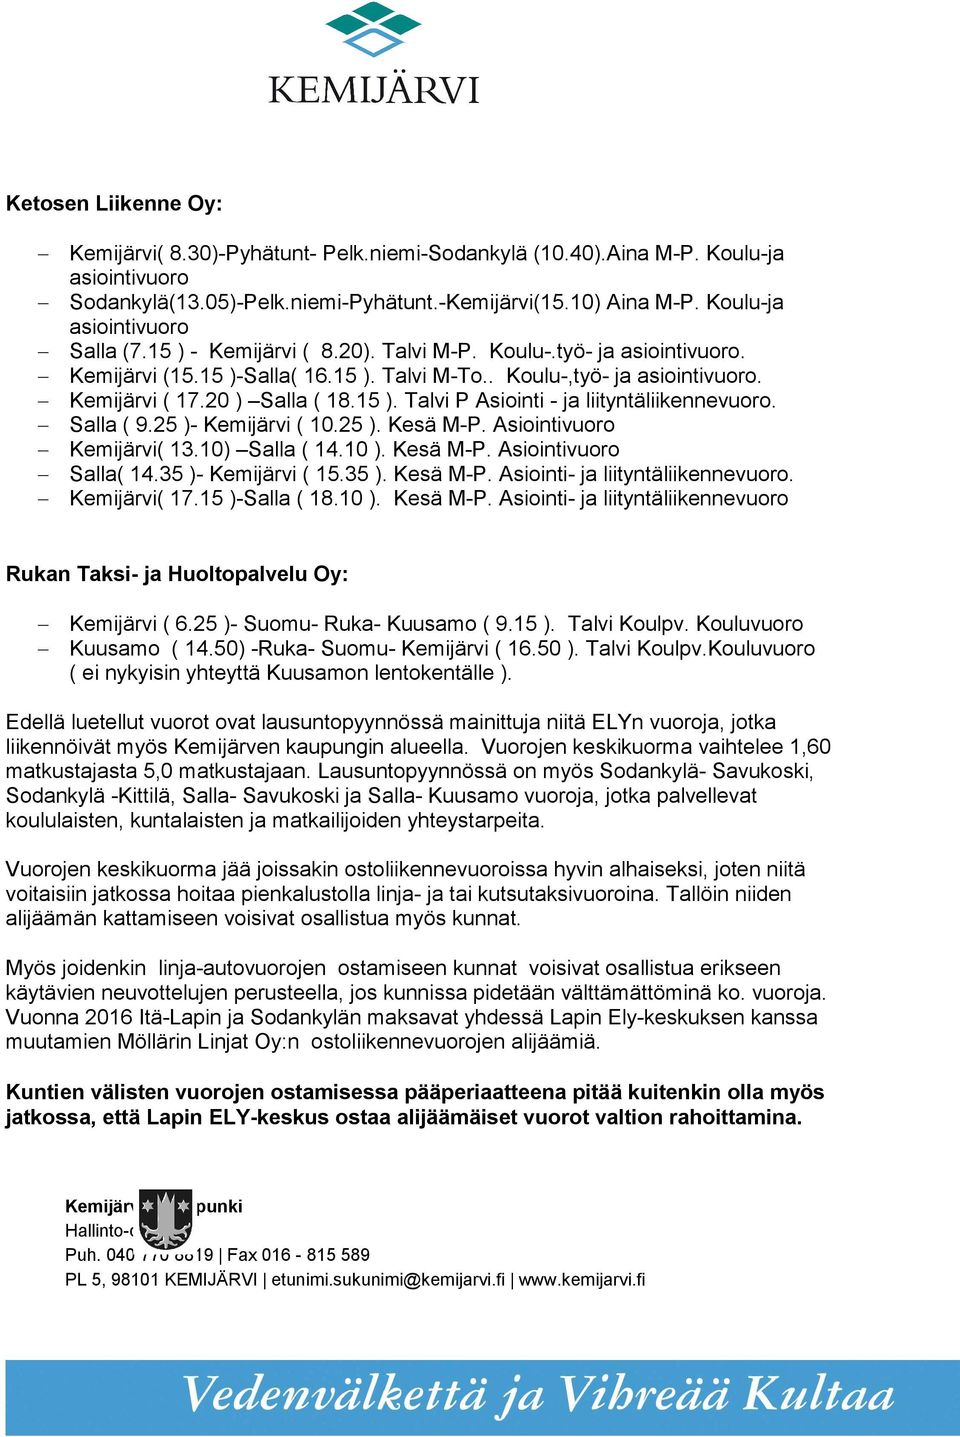 20 ) Salla ( 18.15 ). Talvi P Asiointi - ja. Salla ( 9.25 )- Kemijärvi ( 10.25 ). Kesä M-P. Asiointivuoro Kemijärvi( 13.10) Salla ( 14.10 ). Kesä M-P. Asiointivuoro Salla( 14.35 )- Kemijärvi ( 15.